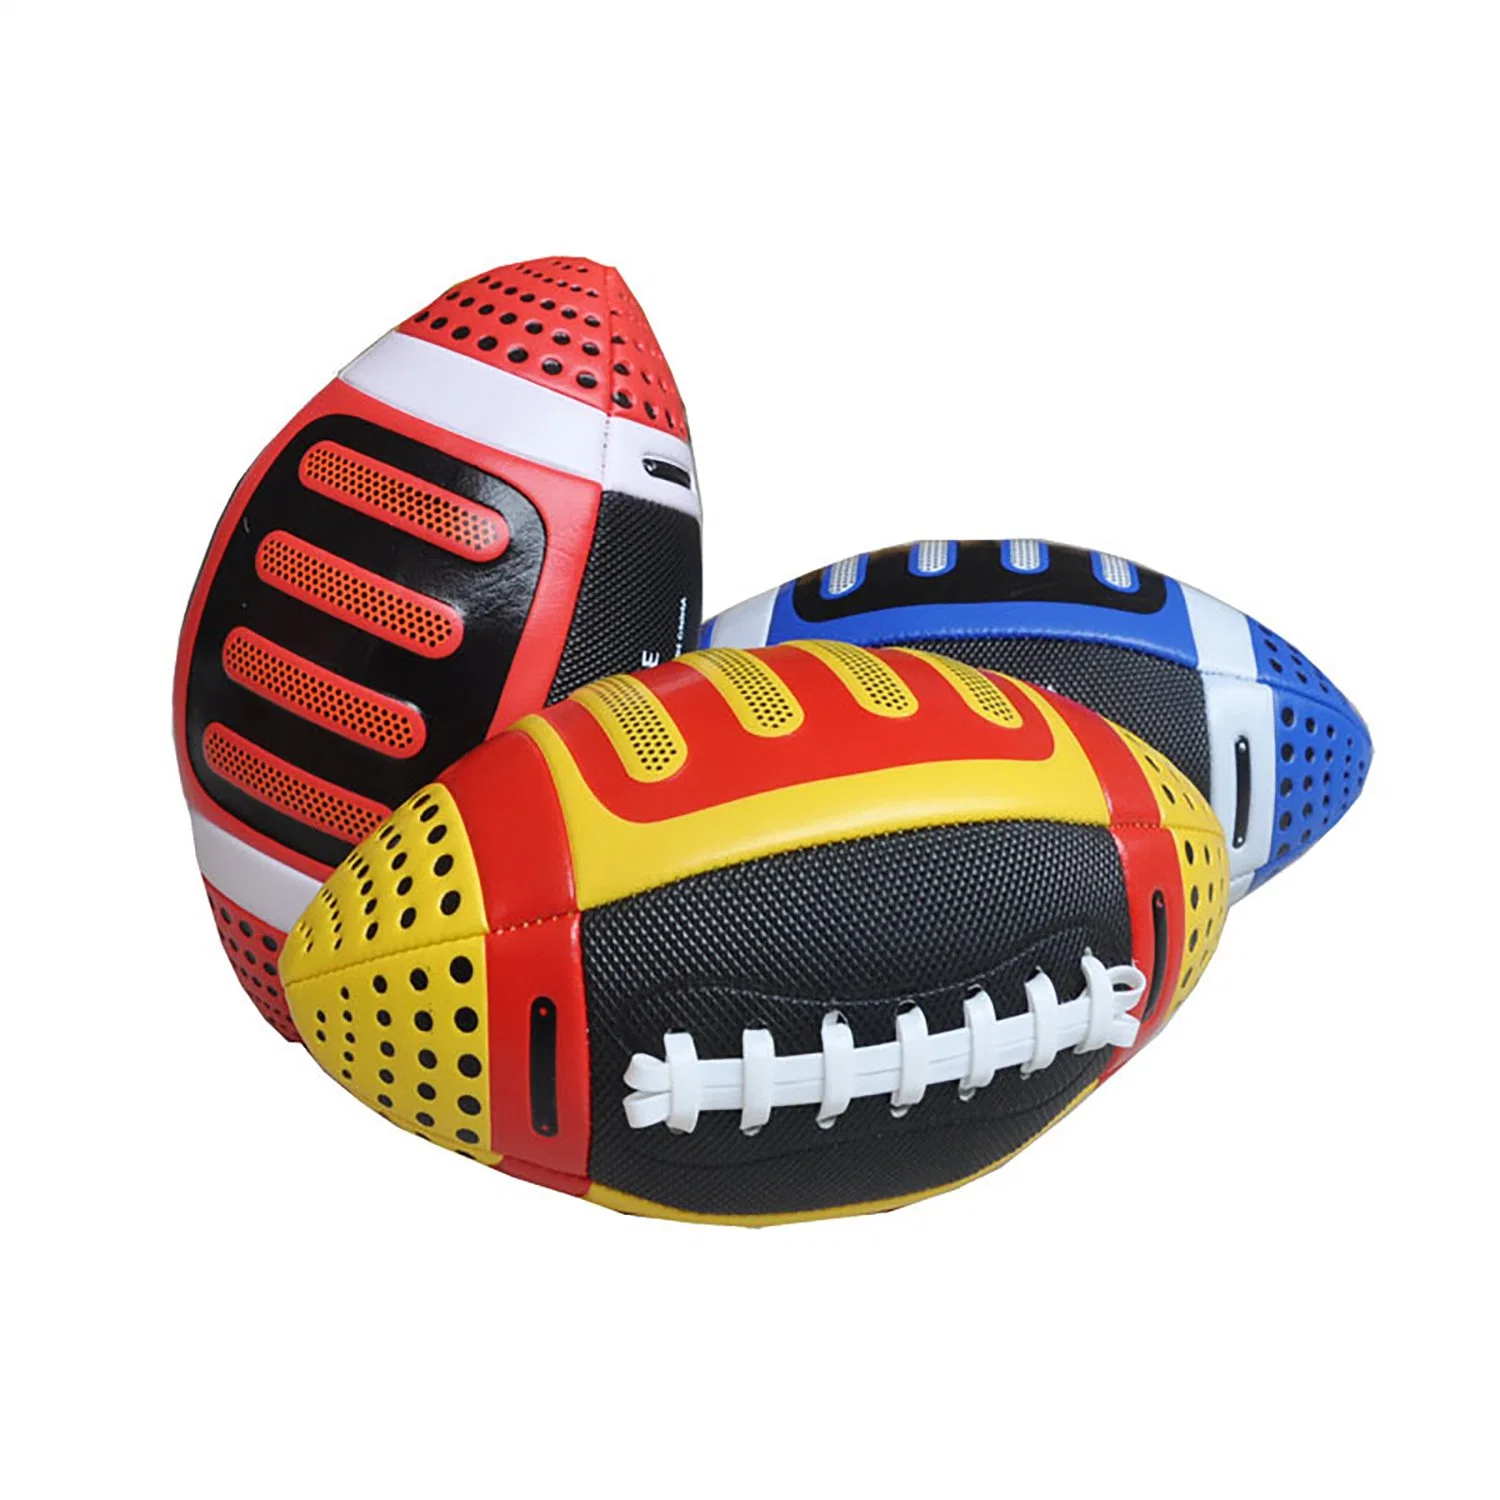 Gummi-Younger-Fußball, Sportbälle für Kinder, Wasserdichte Fußball Bl22573